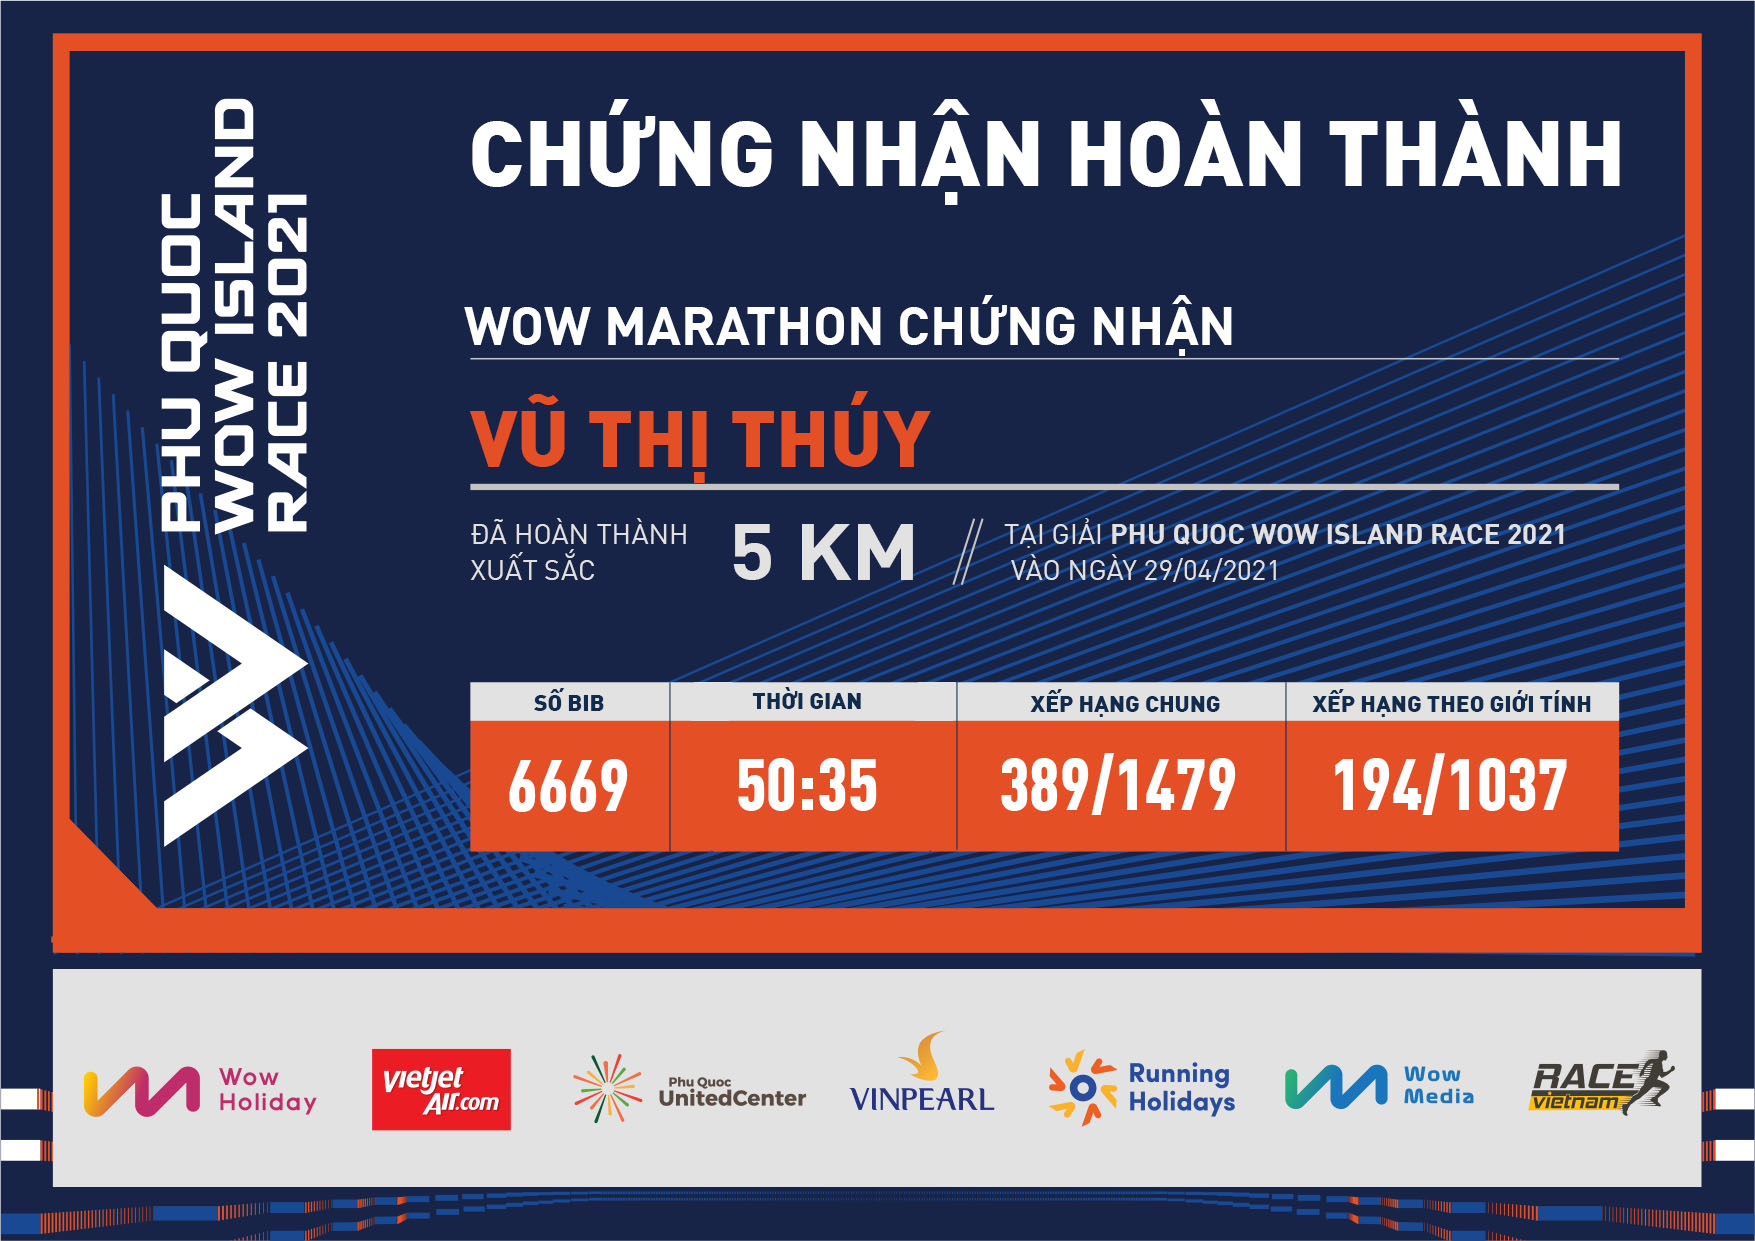 6669 - Vũ Thị Thúy